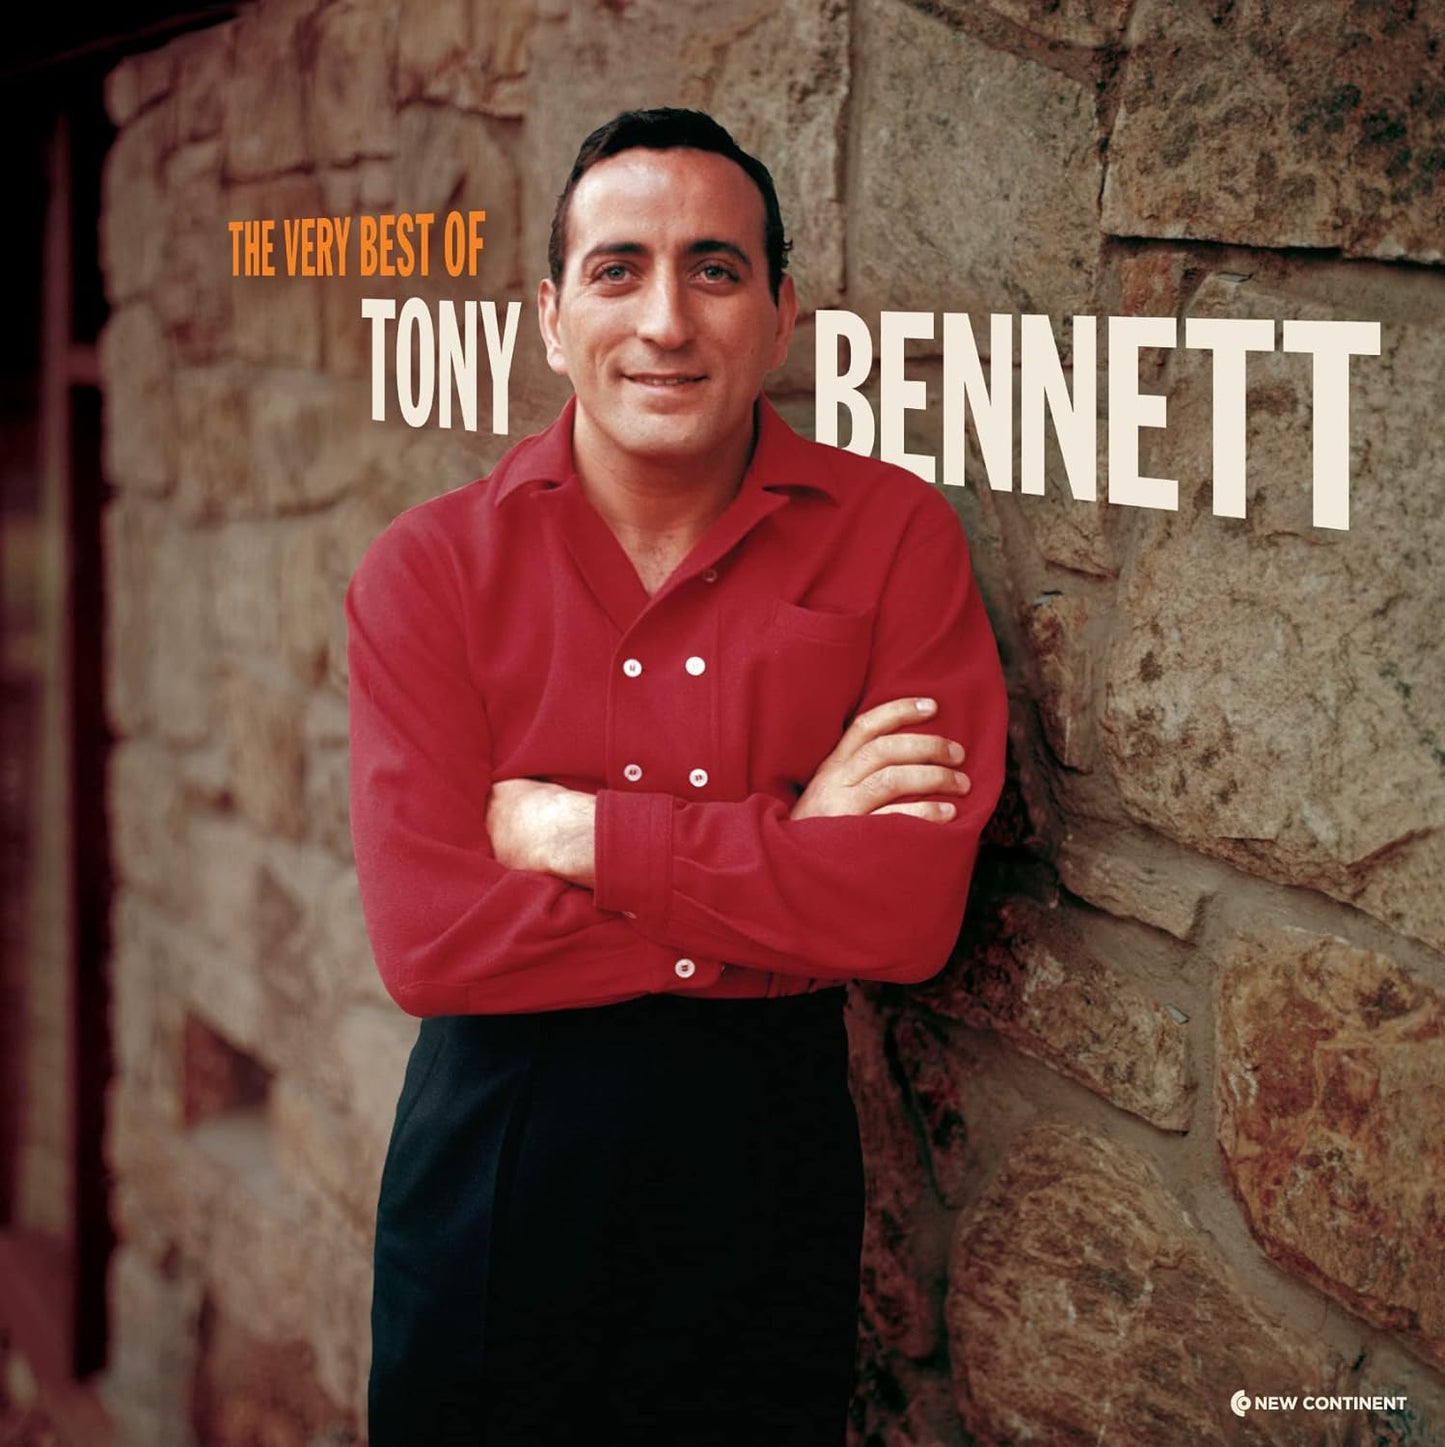 Tony Bennett - Best Of Tony Bennett